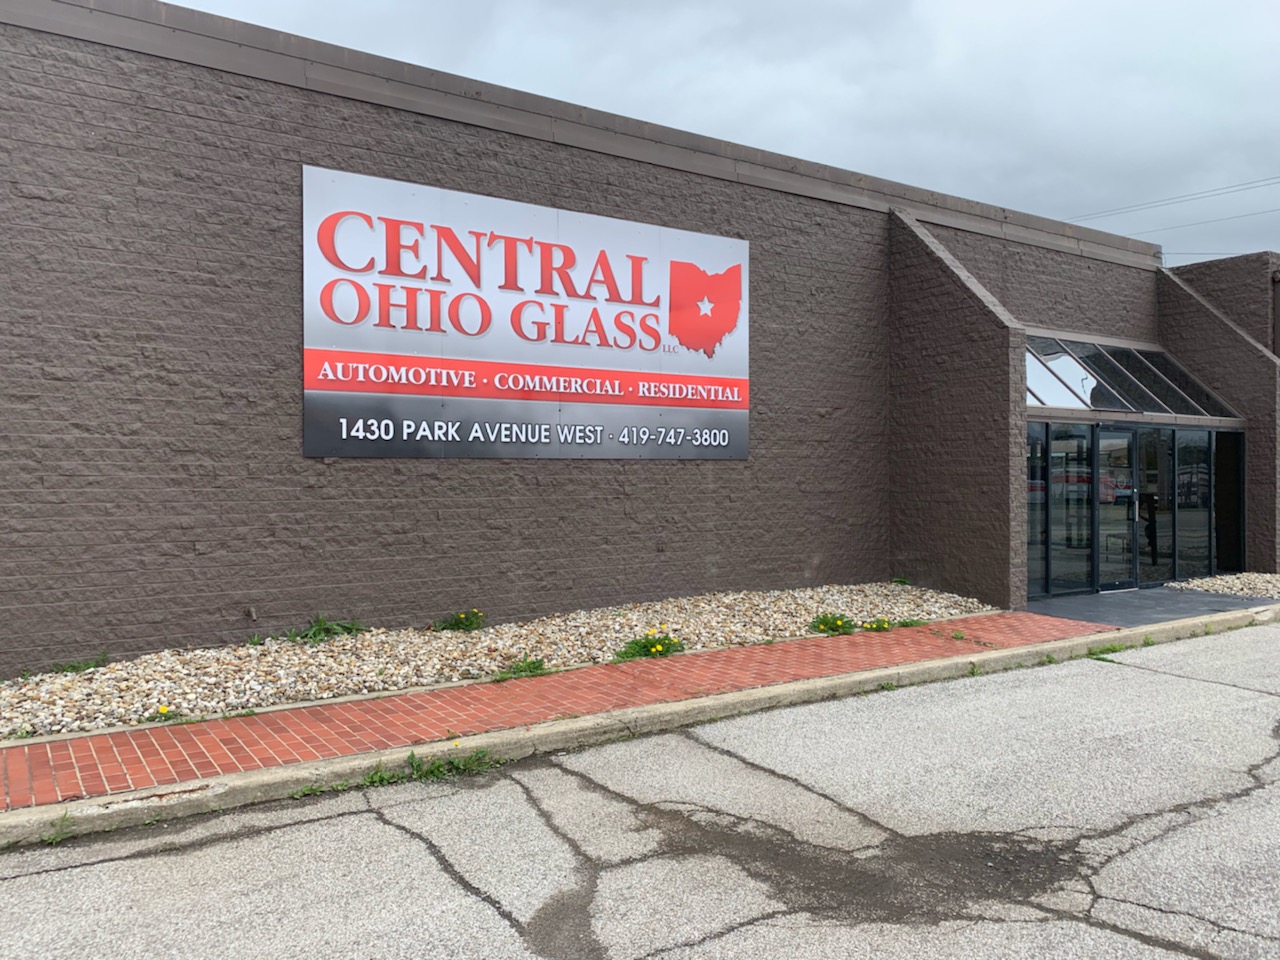 CENTRAL OHIO GLASS